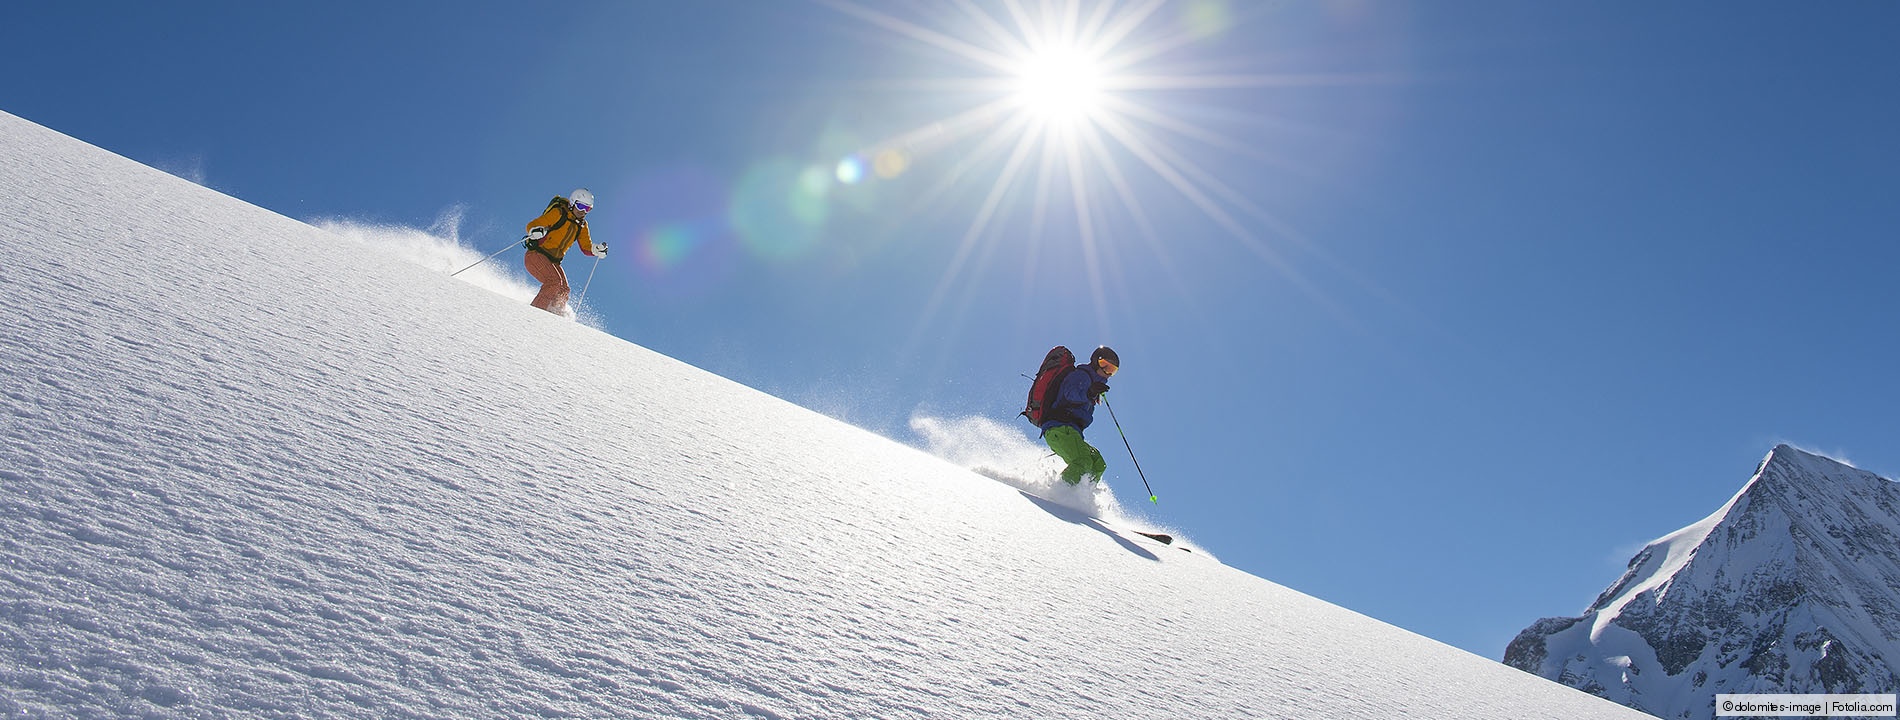 Zwei Skifahrer fahren einen Berg hinunter